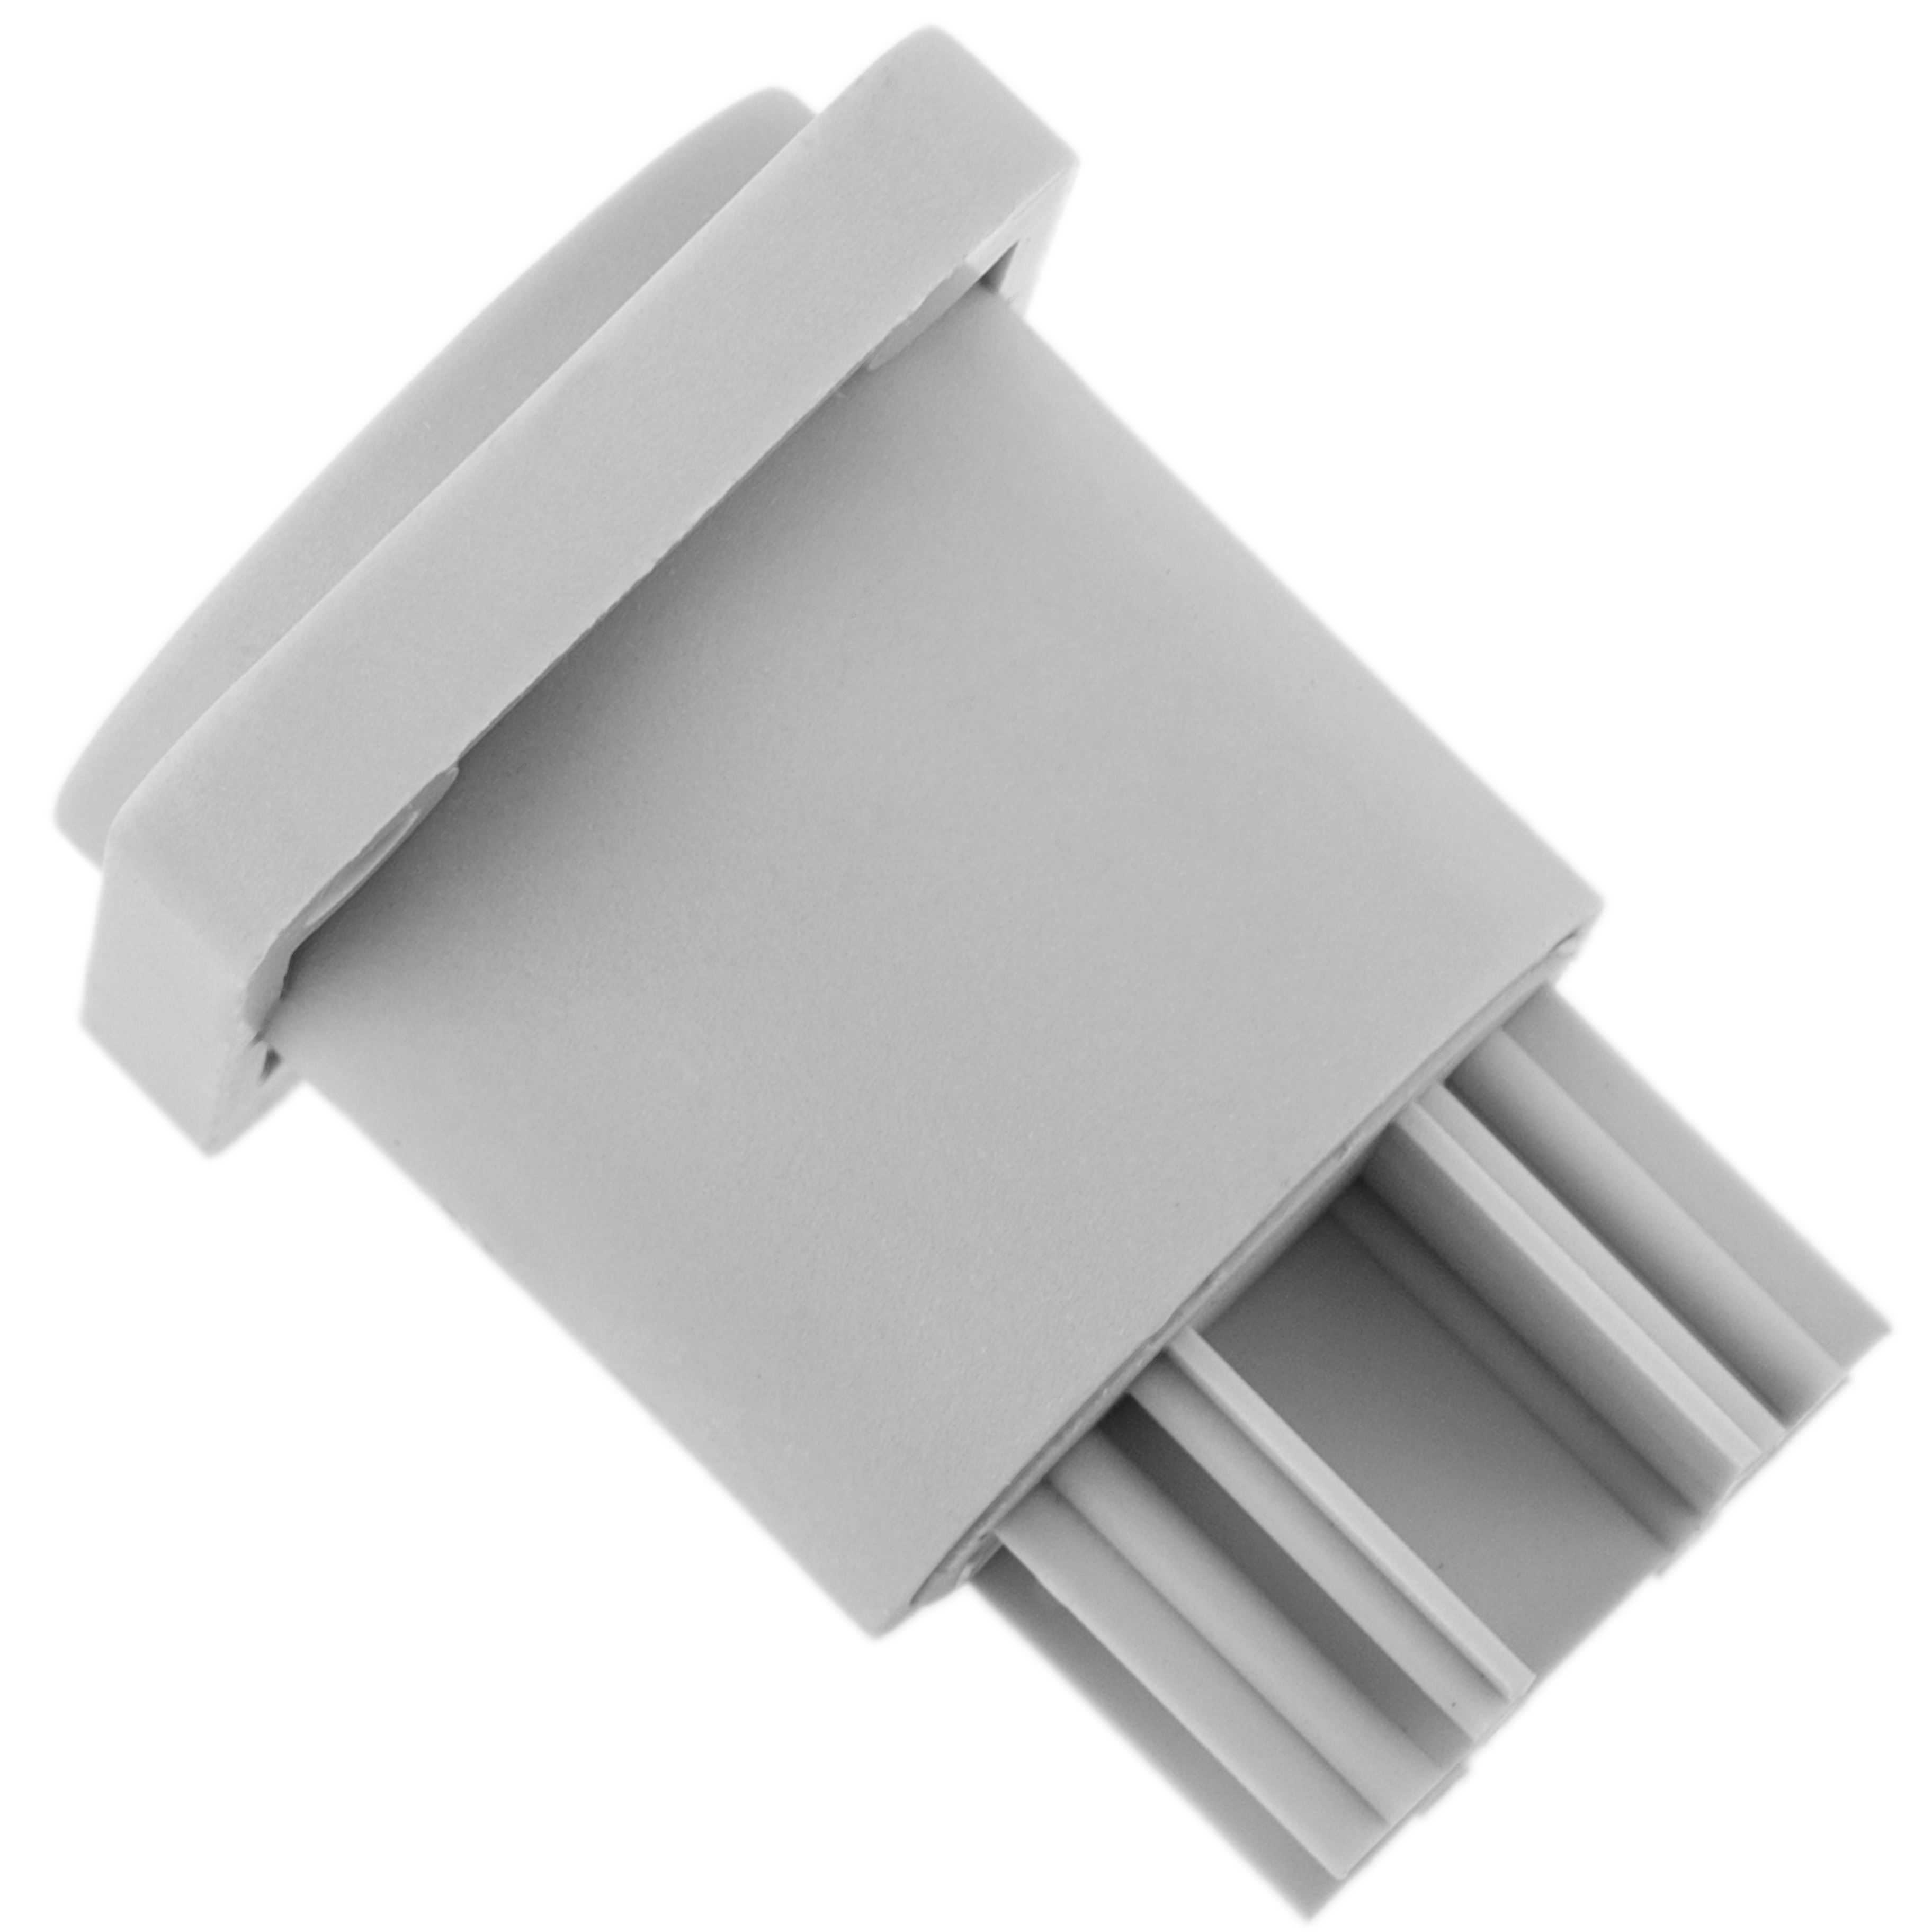 Conector de Alta Potencia de 250V y 20A, Power Connector Input Hembra, Color Gris